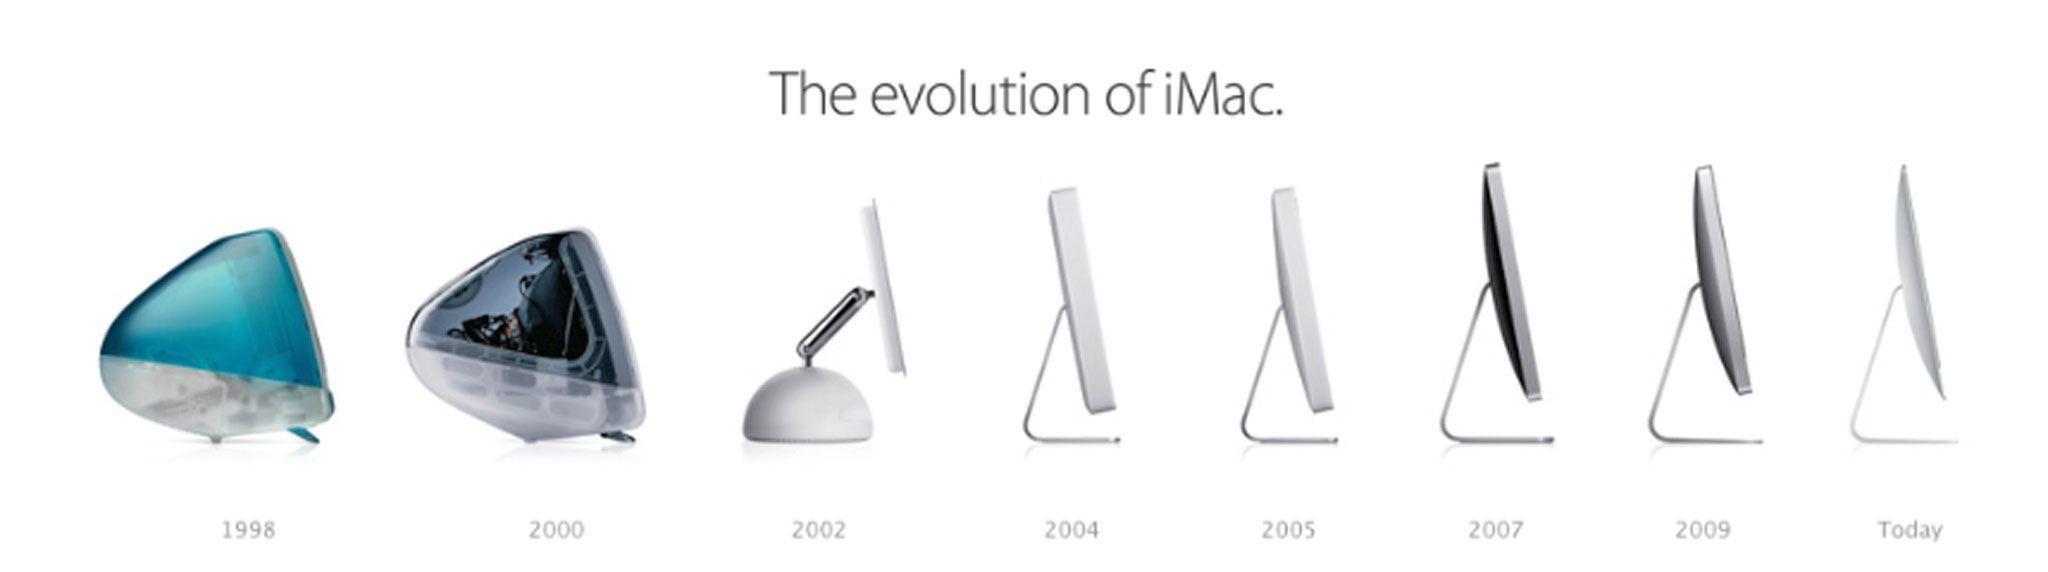 Evolución de iMac